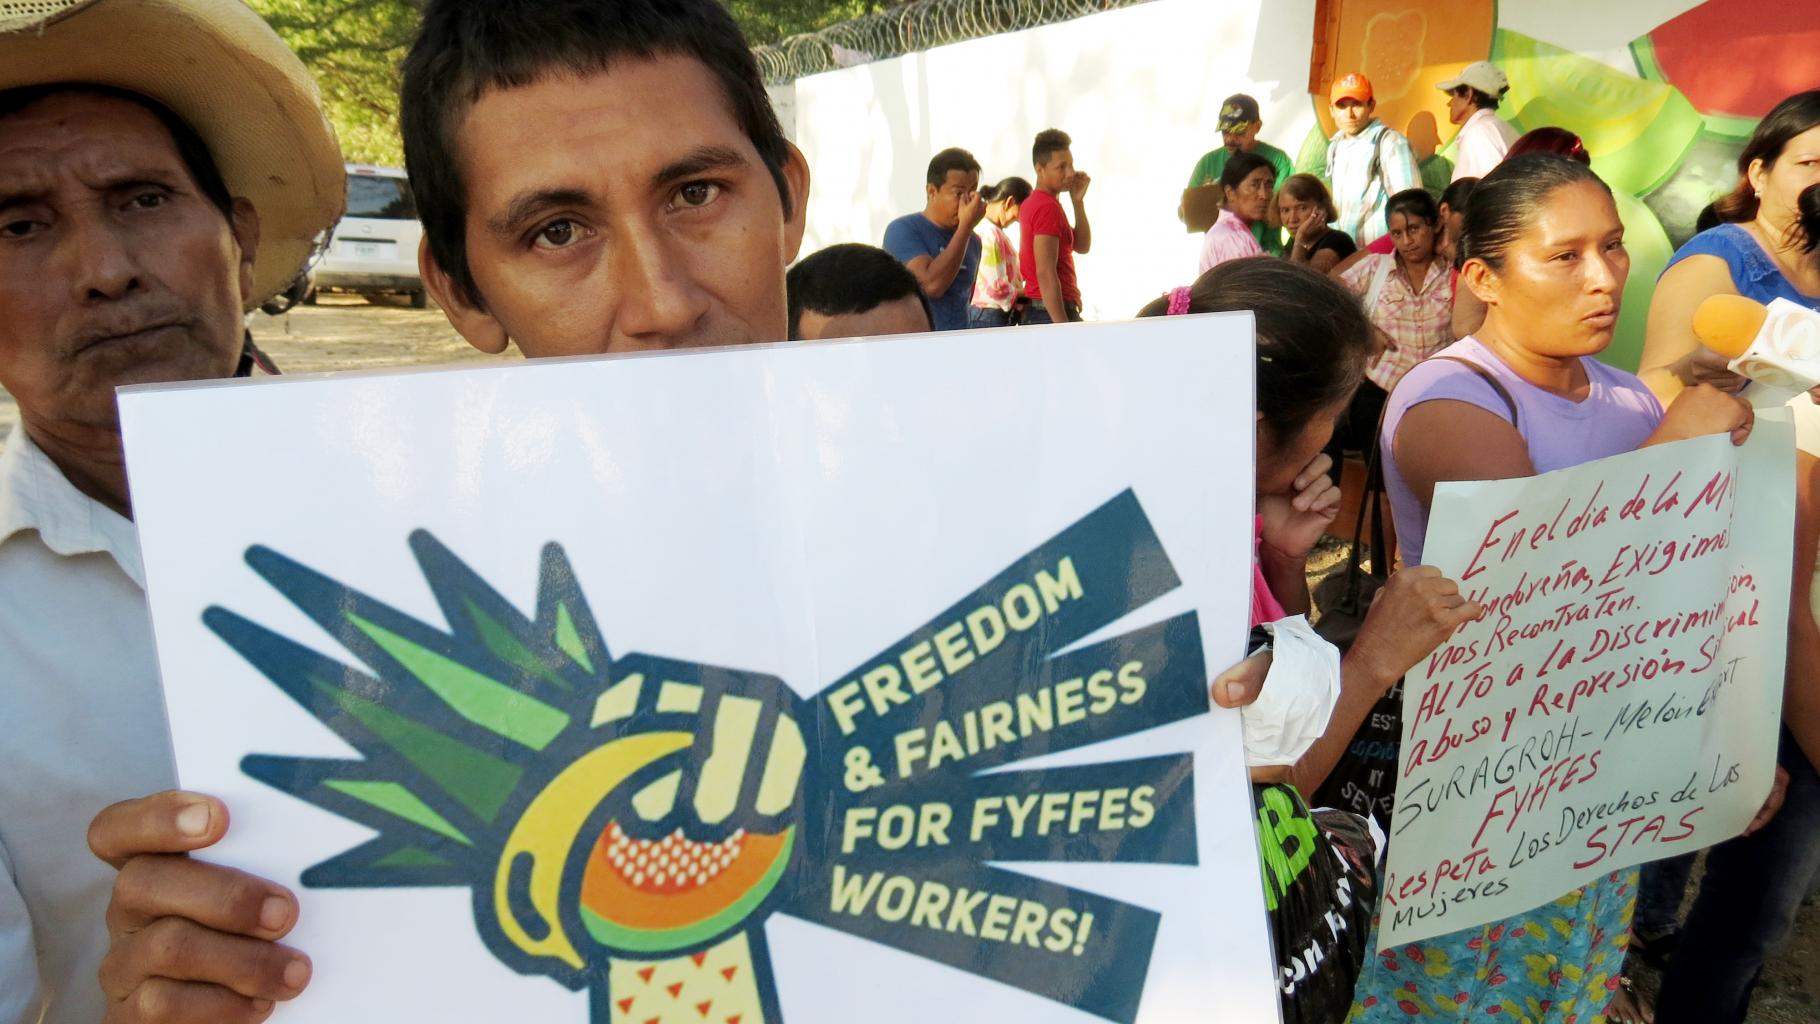 Ein Demonstrant hält ein Plakat in die Kamera: „Freedom and fairness for Fyffes workers!“